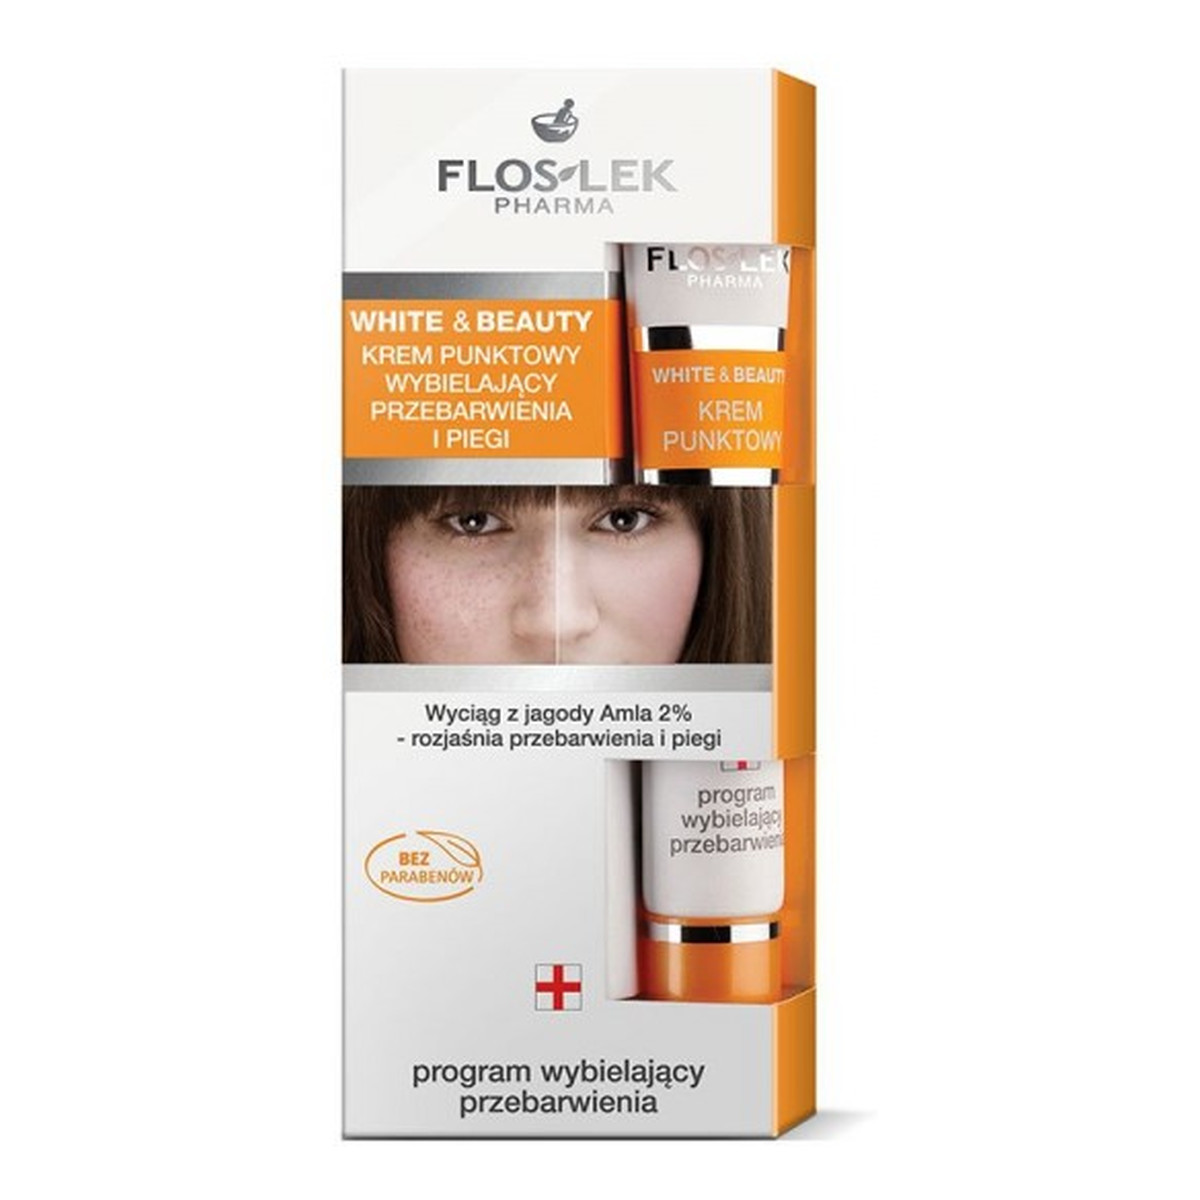 FlosLek White & Beauty Pharma Krem Punktowy Wybielający Przebarwienia 20ml